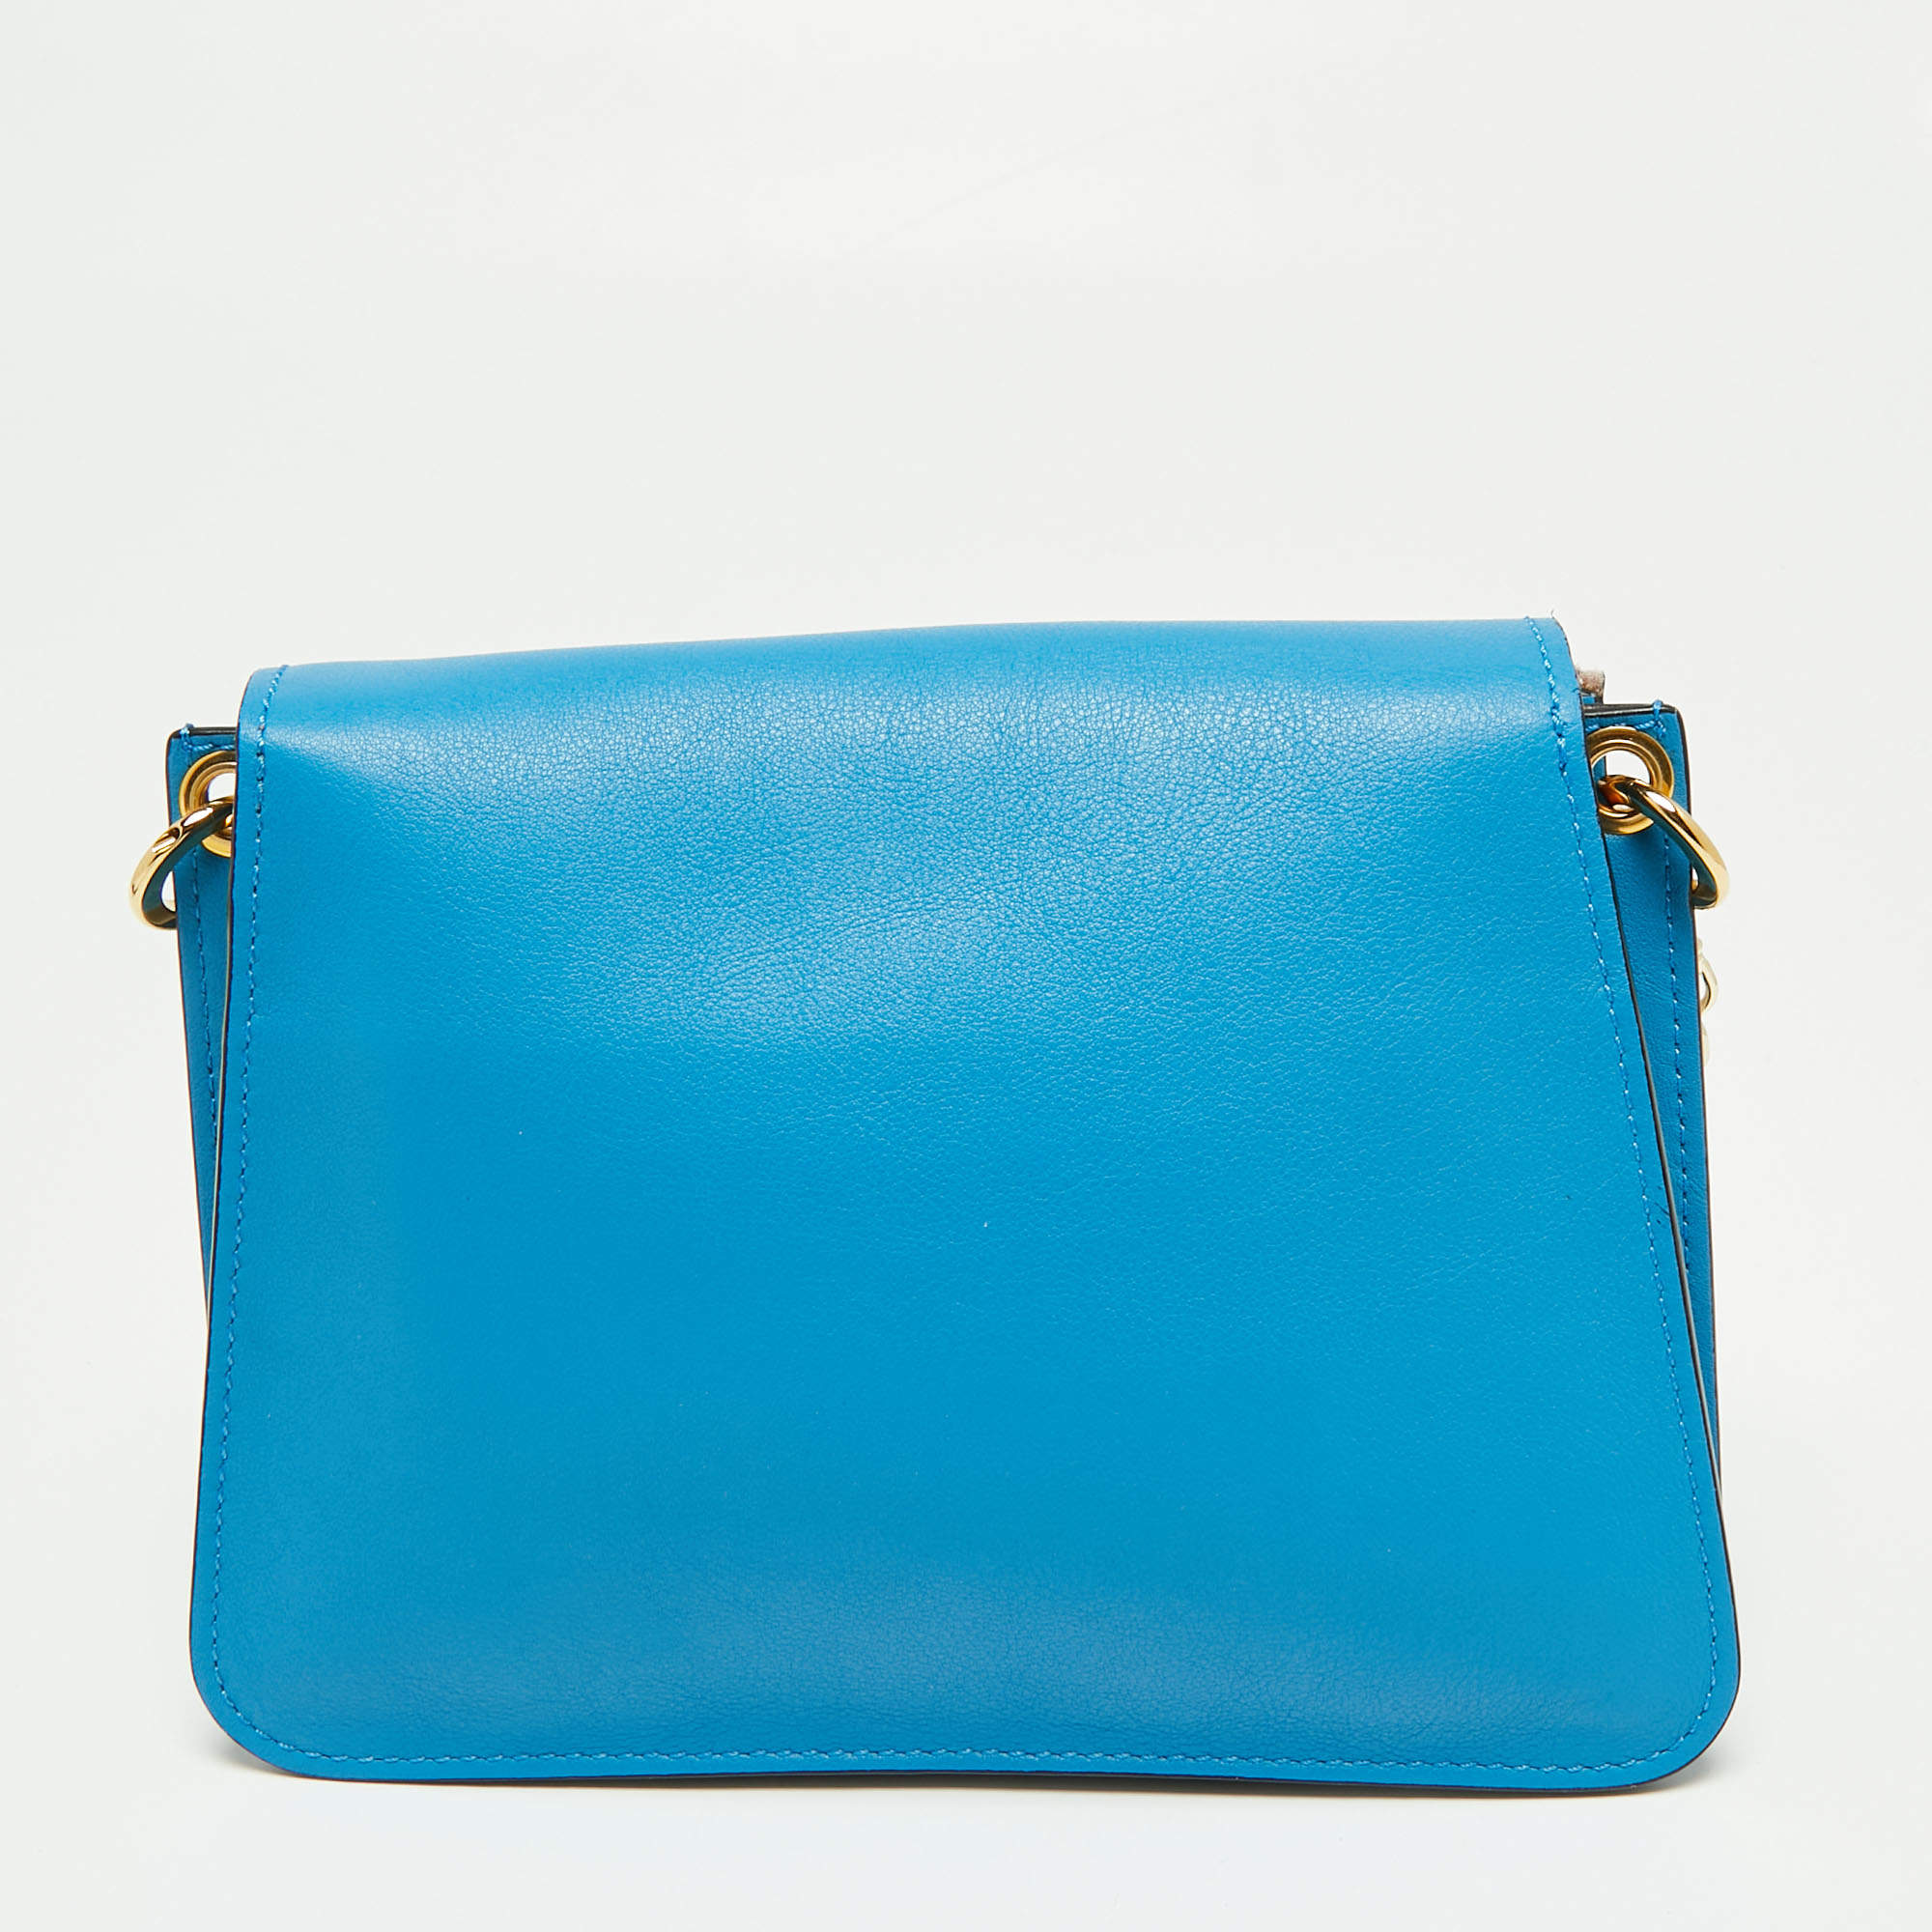 Buy LIKE STYLE Women Blue Hand-held Bag BLUE Online @ Best Price in India |  Flipkart.com